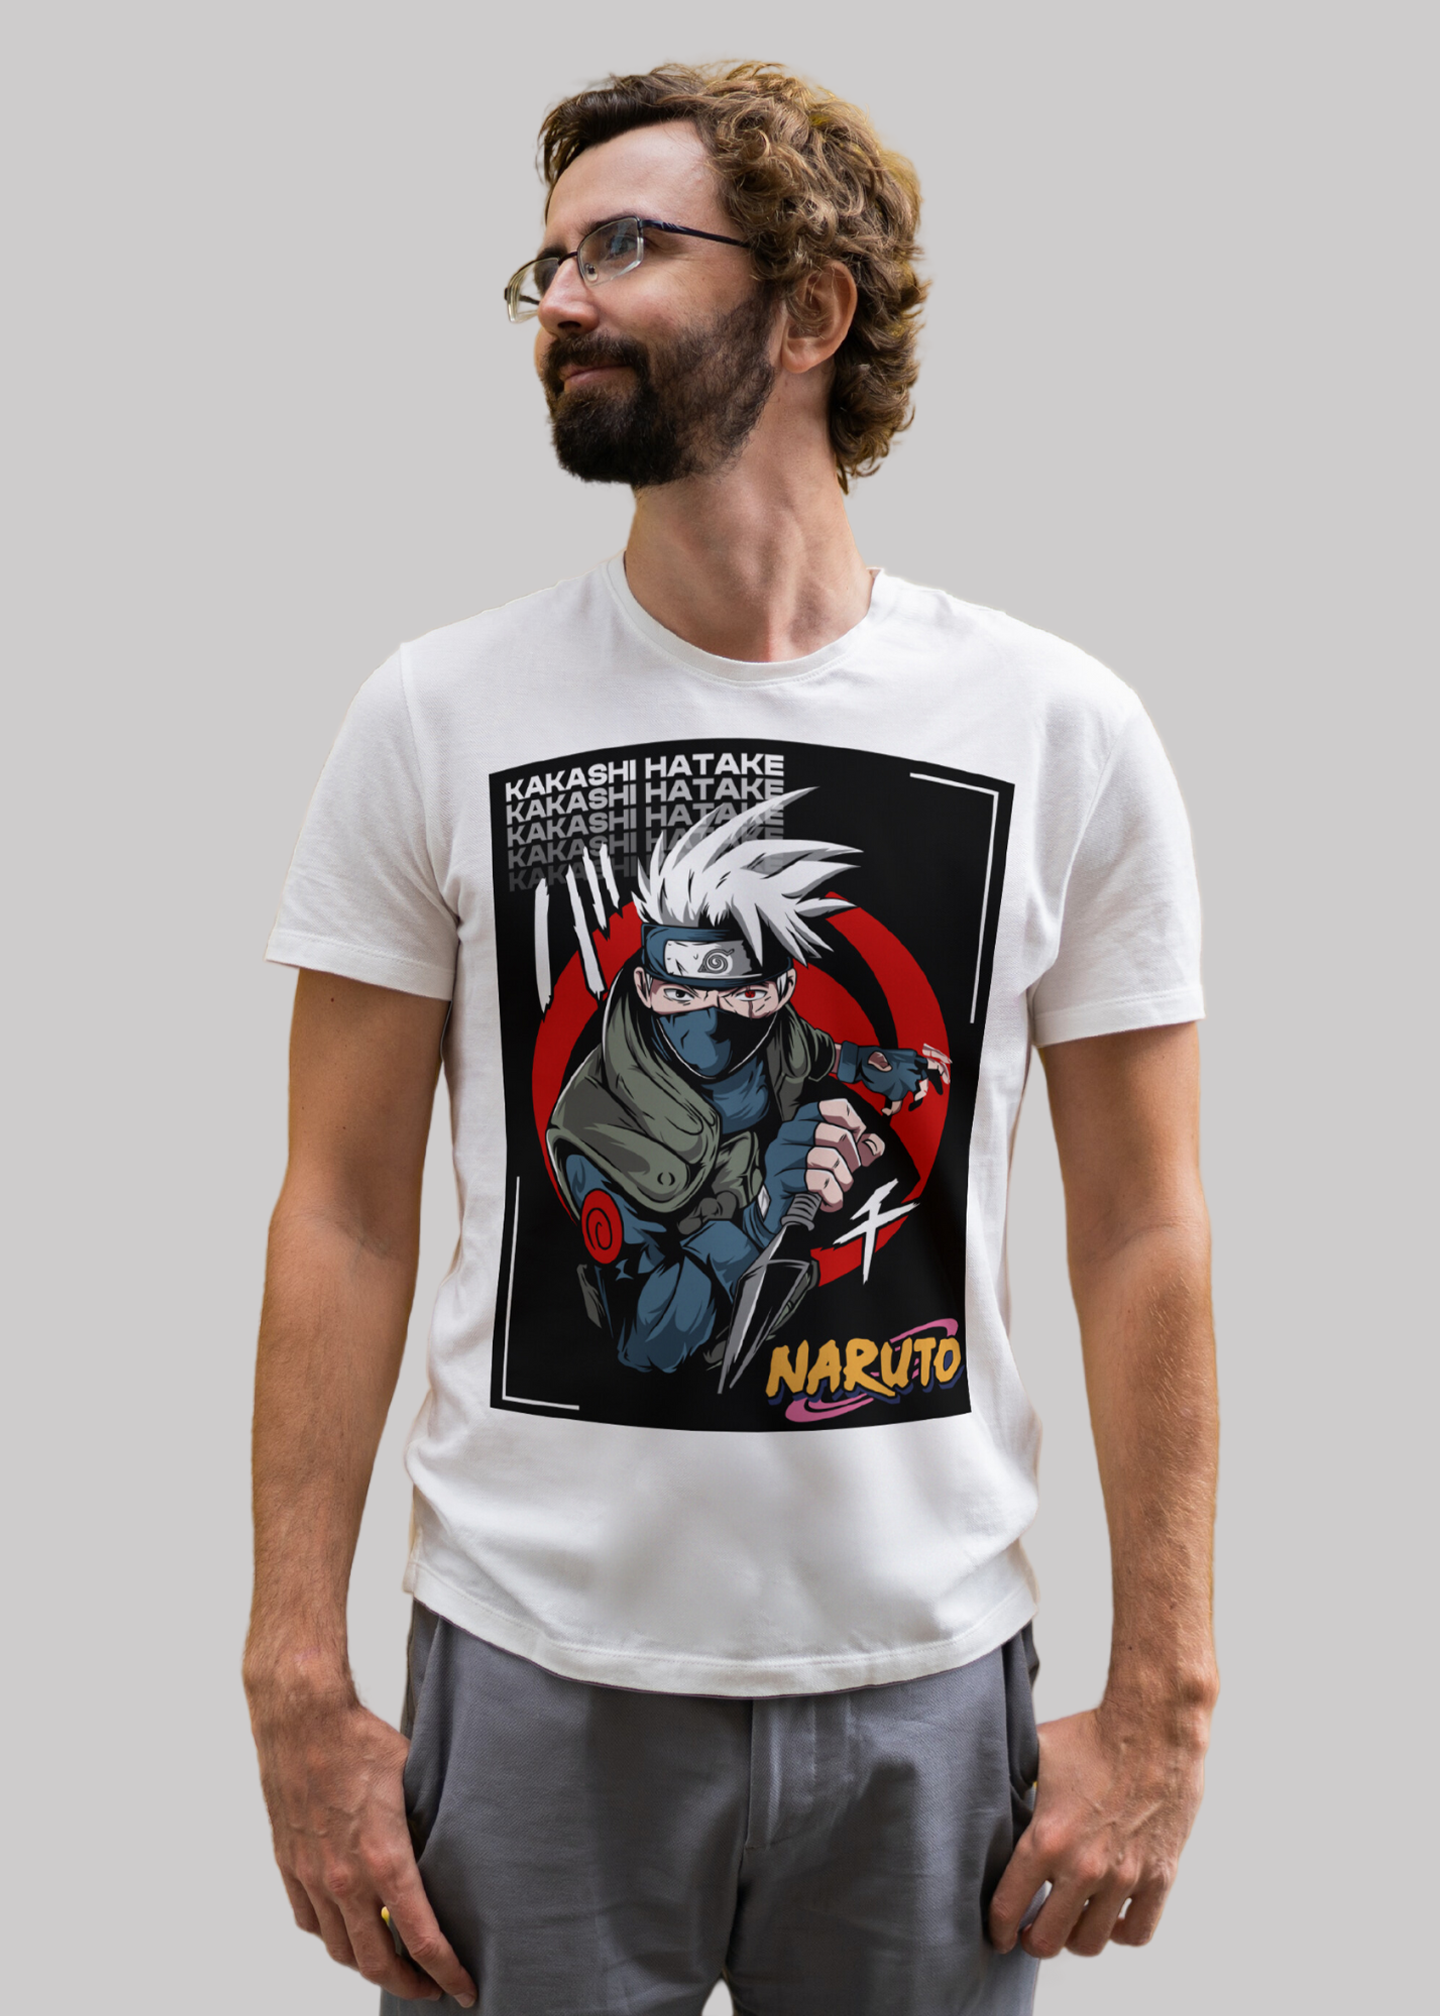 Kakashi hatake Naruto Printed Half Sleeve Premium Cotton T-shirt For Men